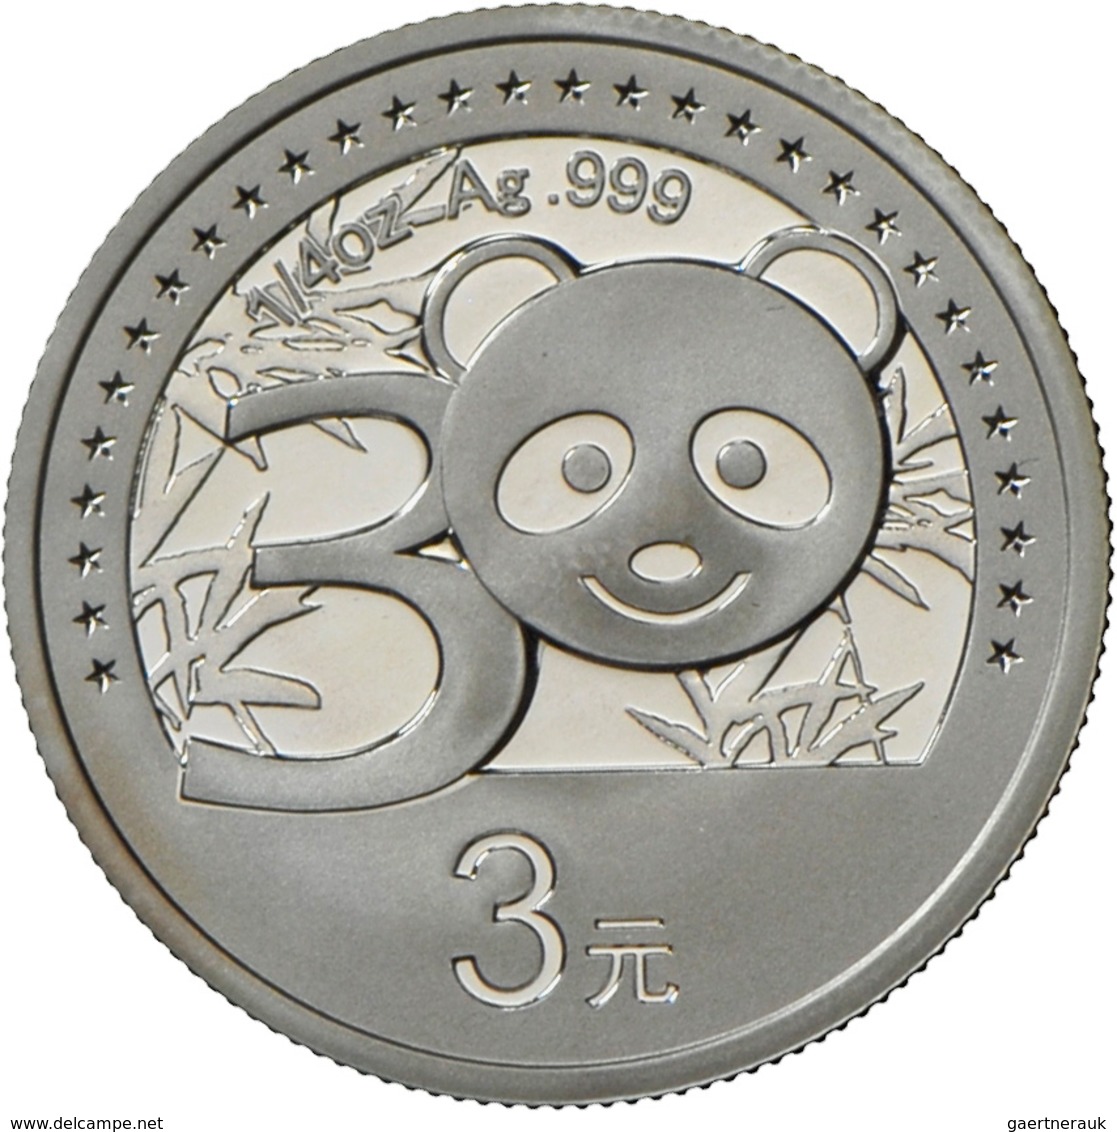 China - Volksrepublik: Lot 2 Silbermünzen: 10 Yuan 2012 Jahr Des Drachen Farbmünze, 1 OZ 999/1000 Si - Chine